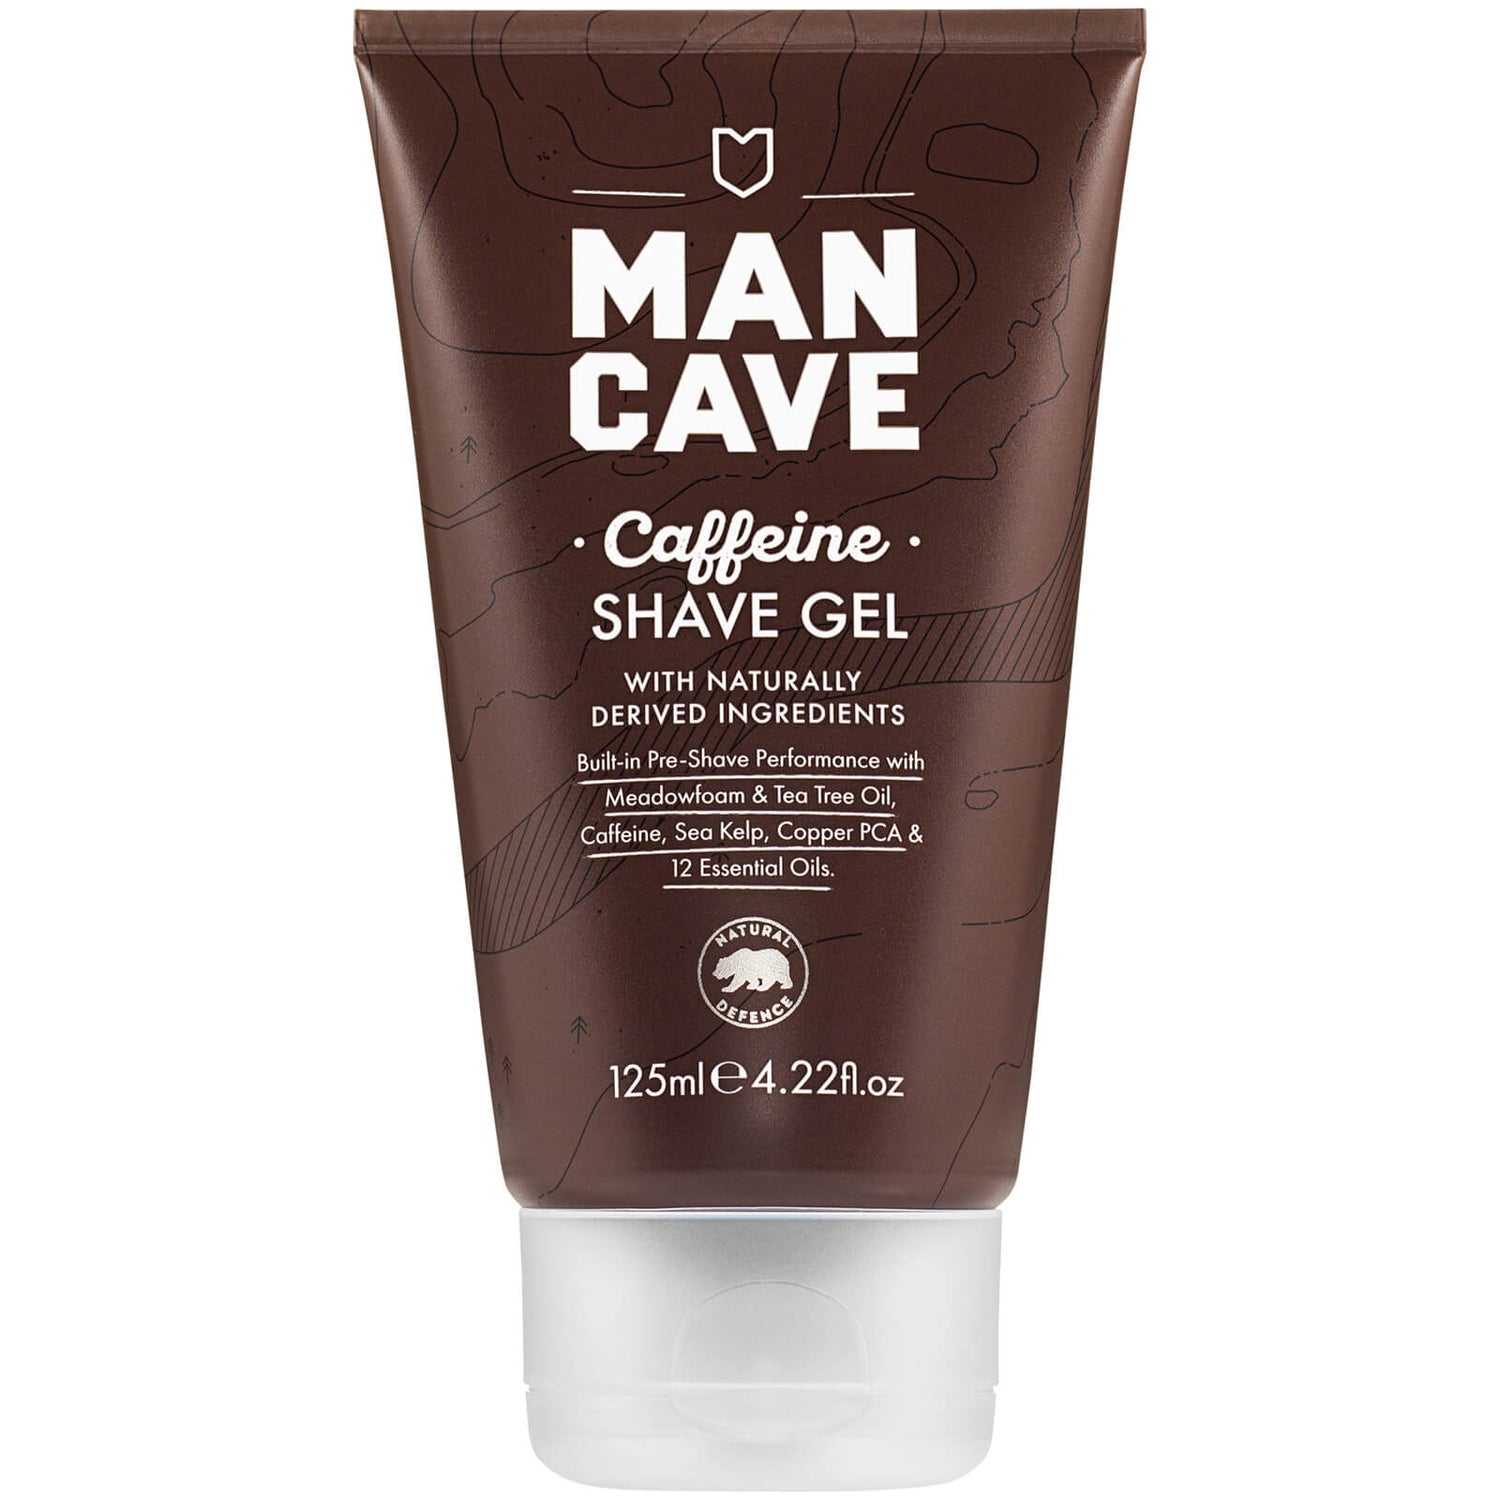 ManCave Caffeine Shave Gel 125ml